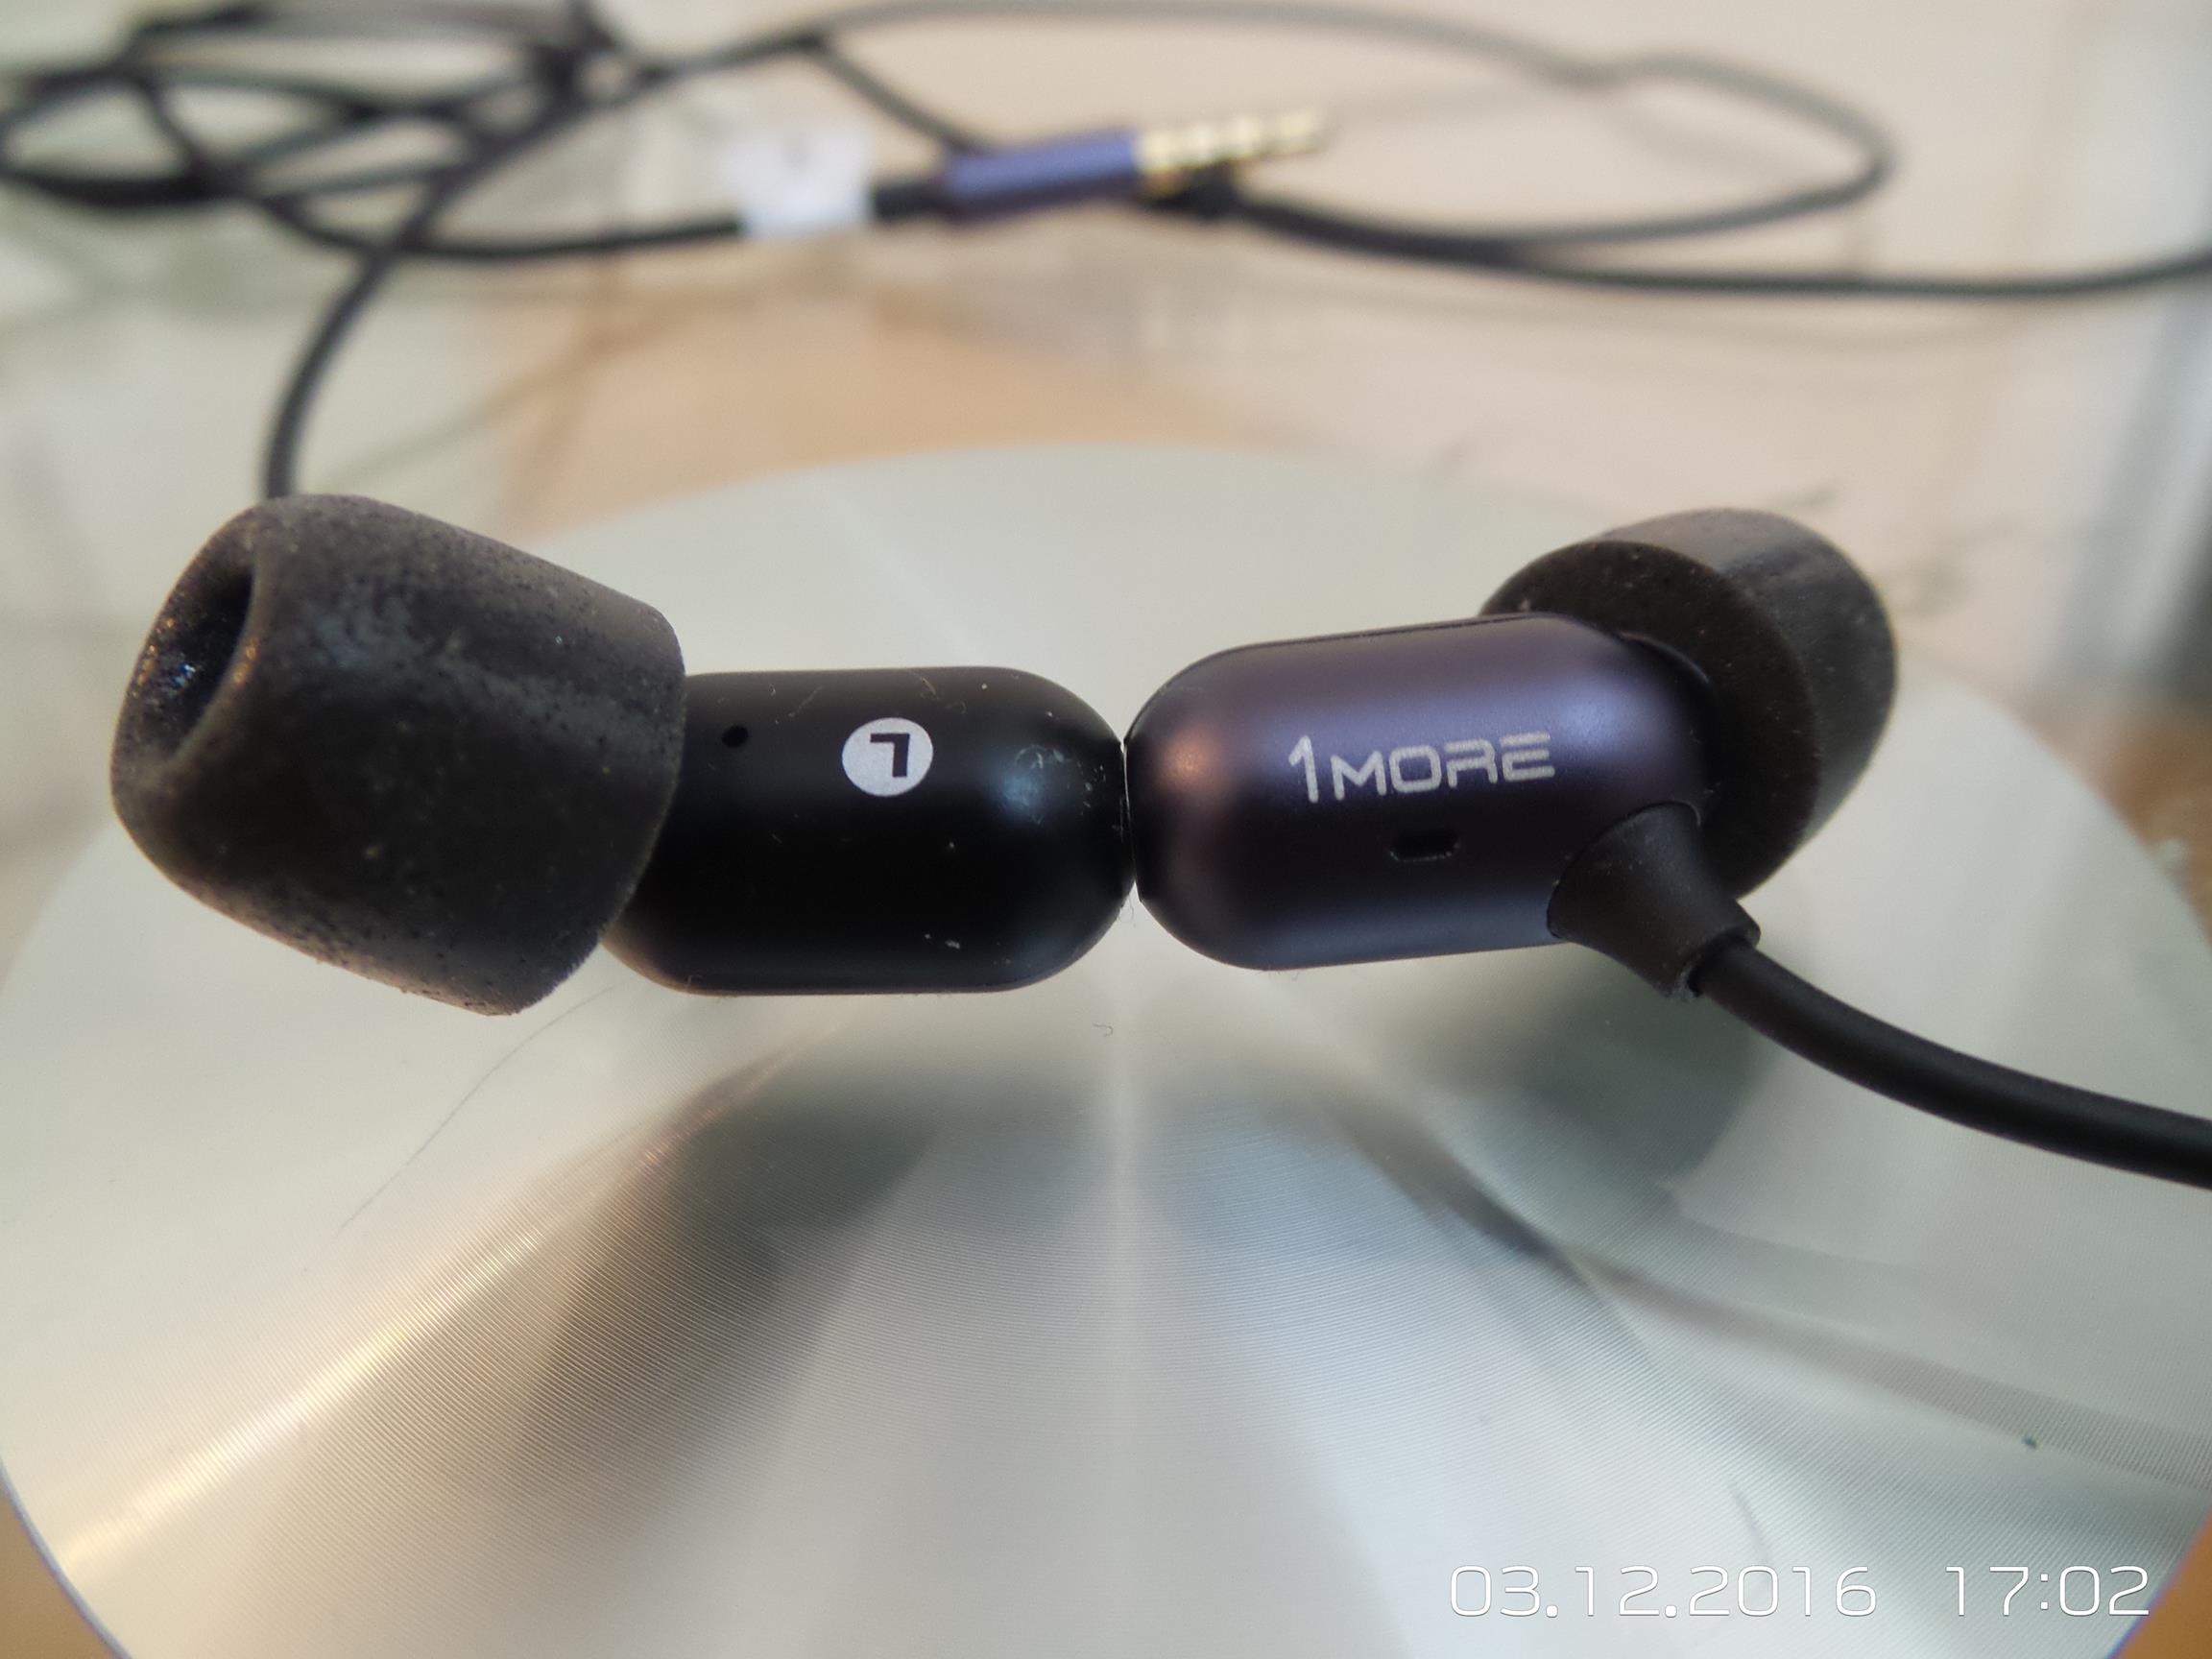 1MORE Capsule Dual-Driver In-Ear Headphones Review